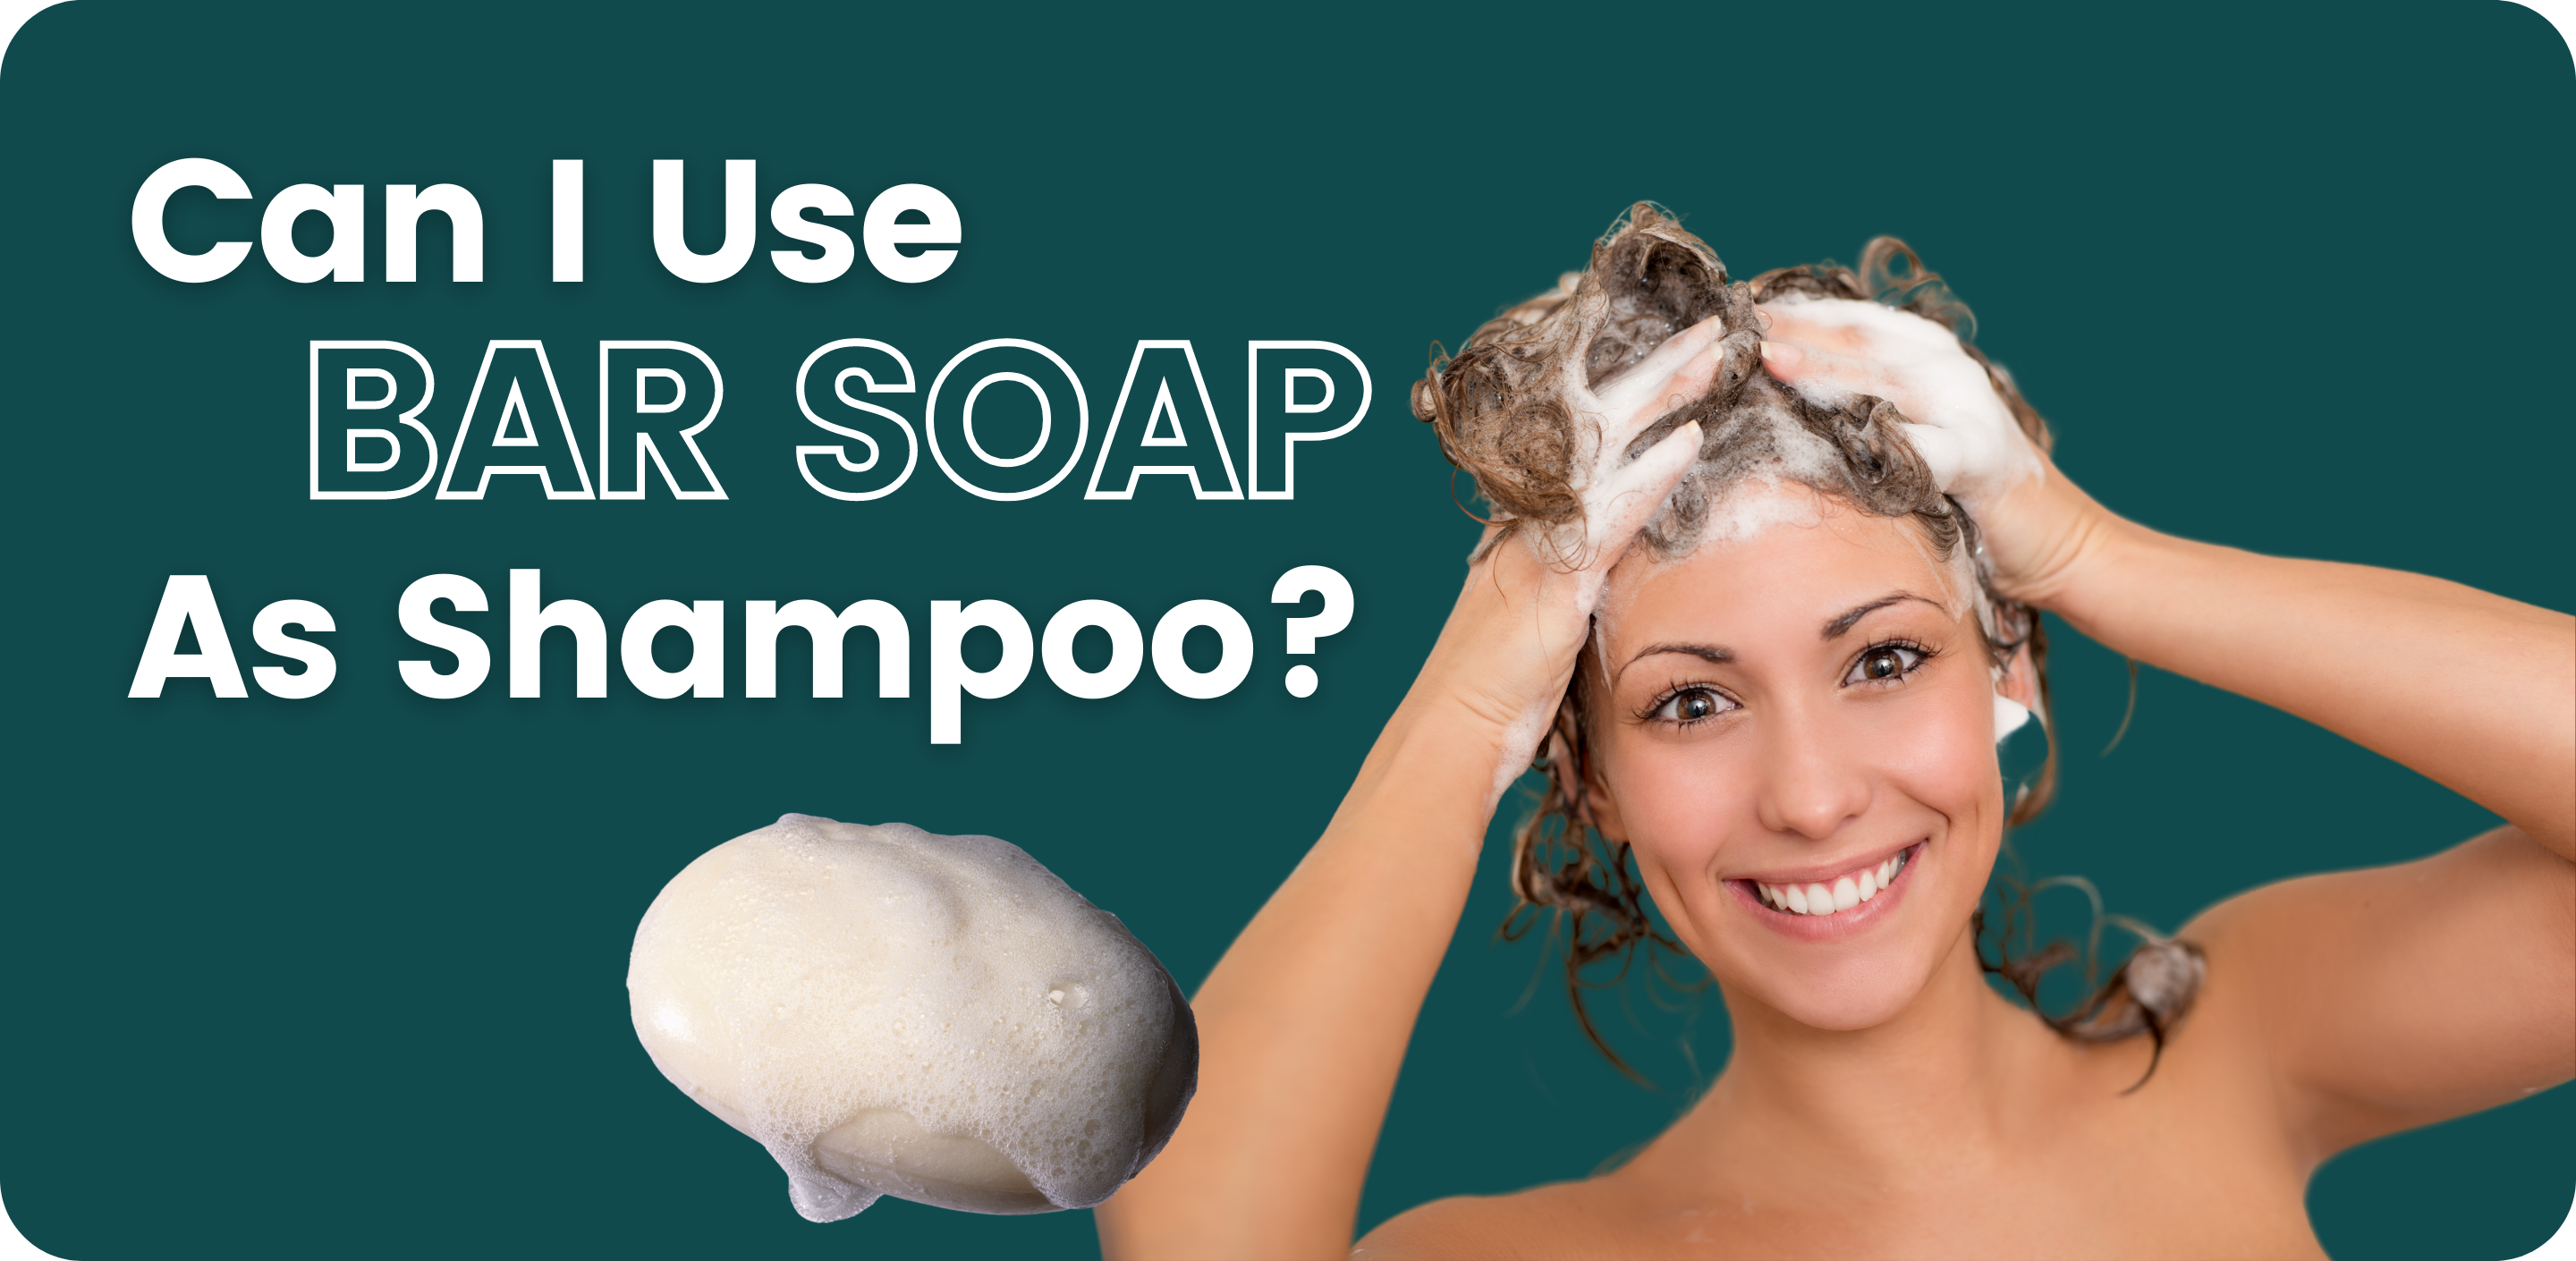 Can I Use Bar Soap As Shampoo?